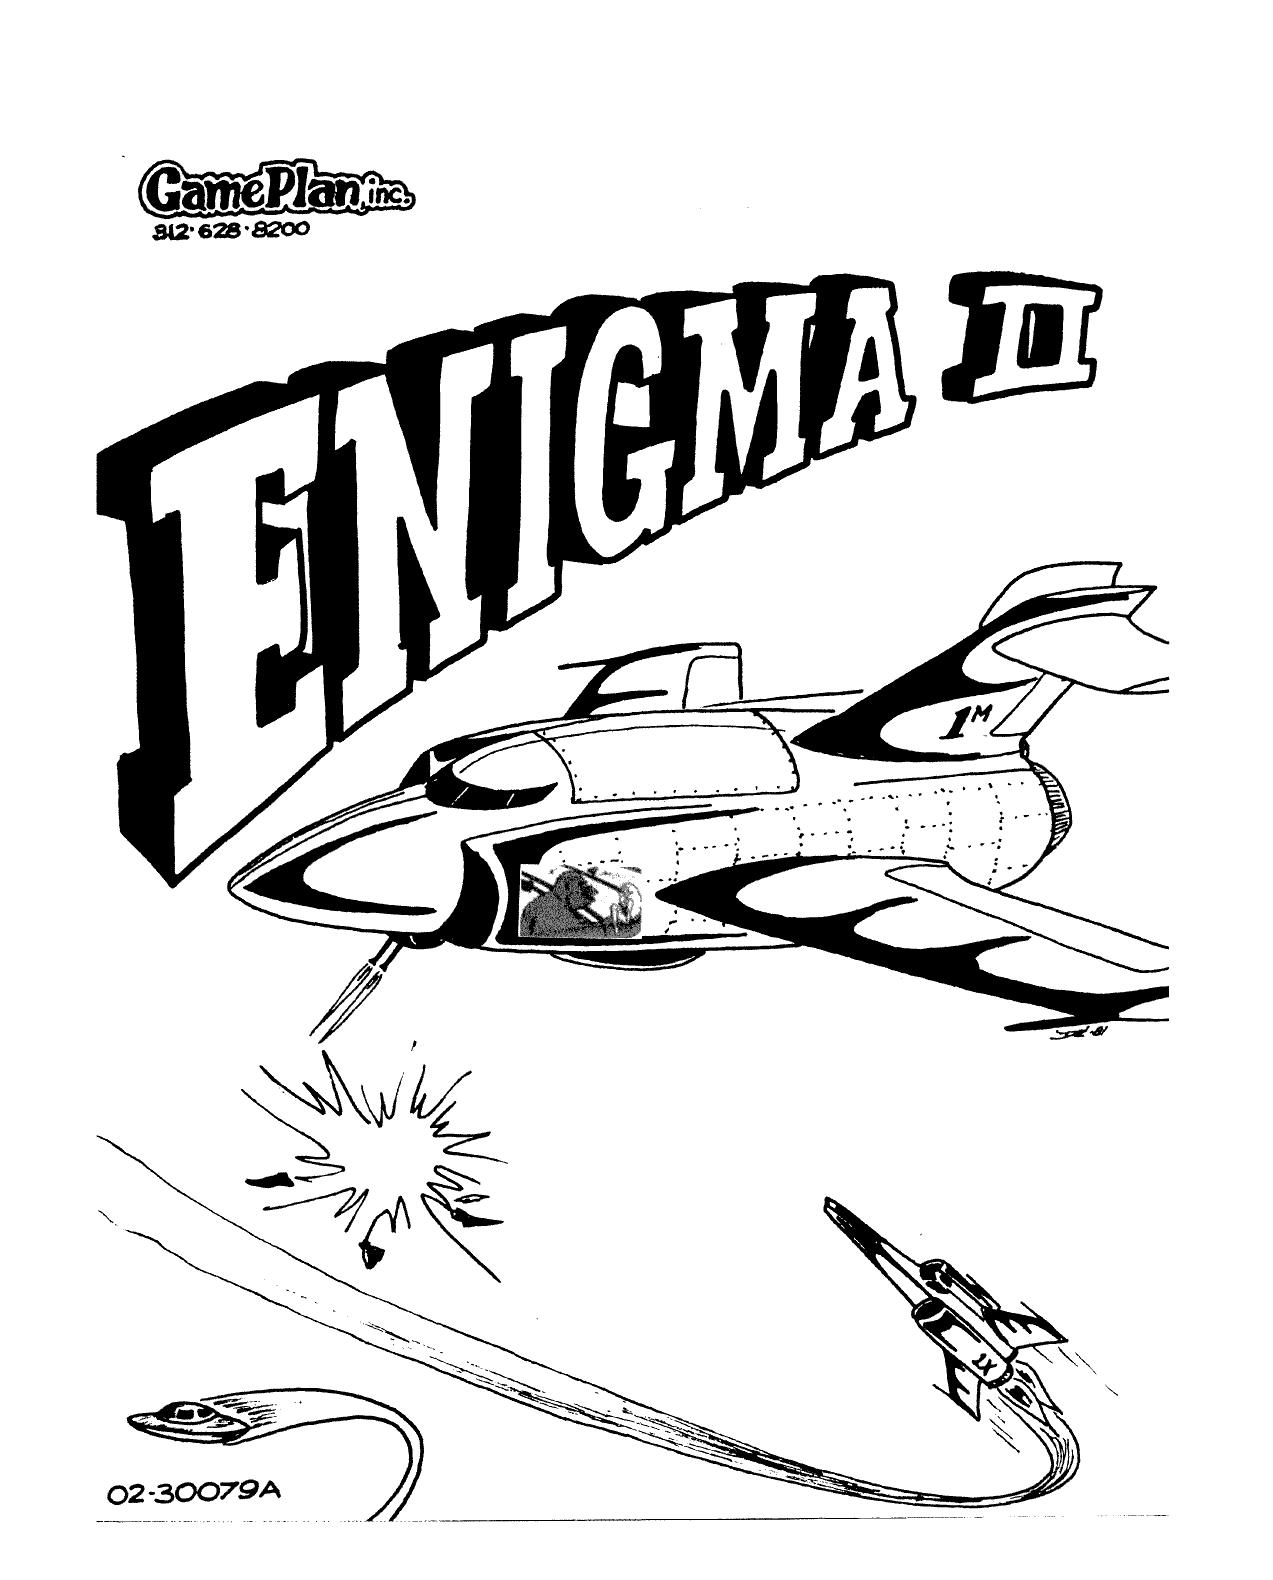 Enigma2 Manual